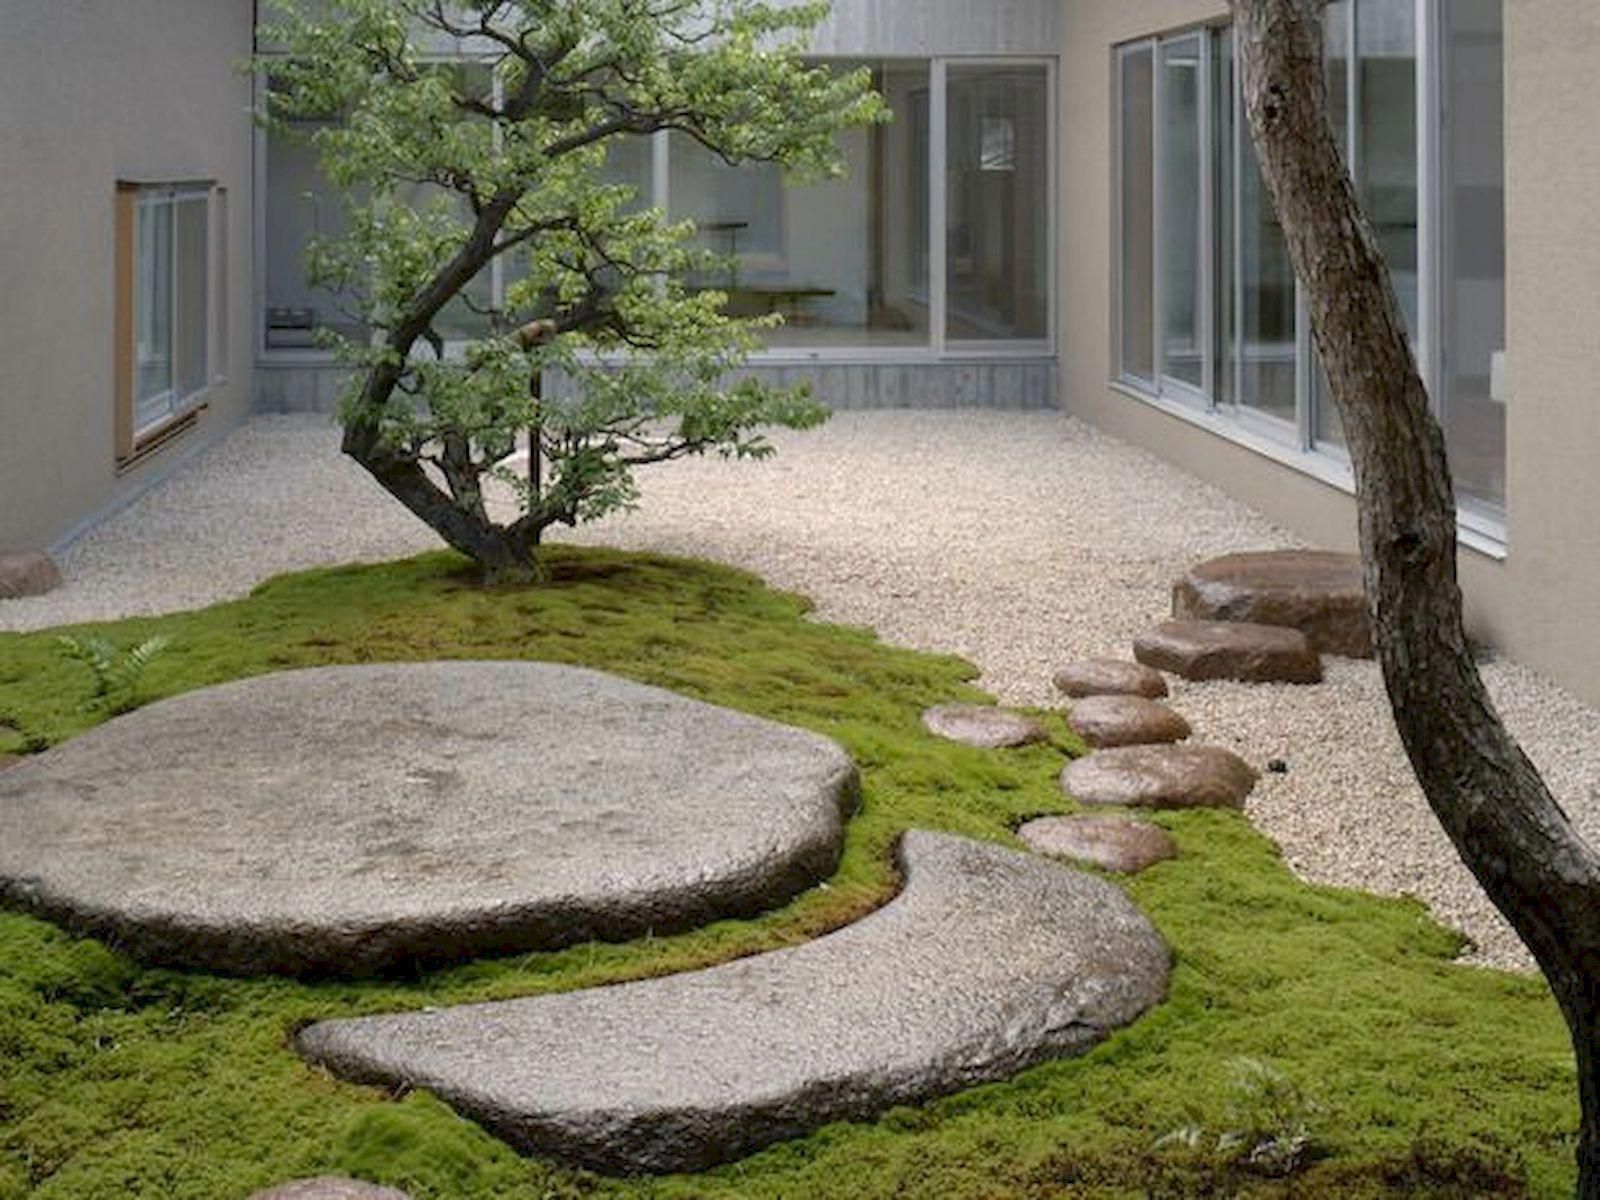 Một ngôi nhà thiết kế theo phong cách hiện đại nhưng chủ nhân vẫn dành khoảng sân rộng rãi để trang trí theo phong cách Nhật Bản.